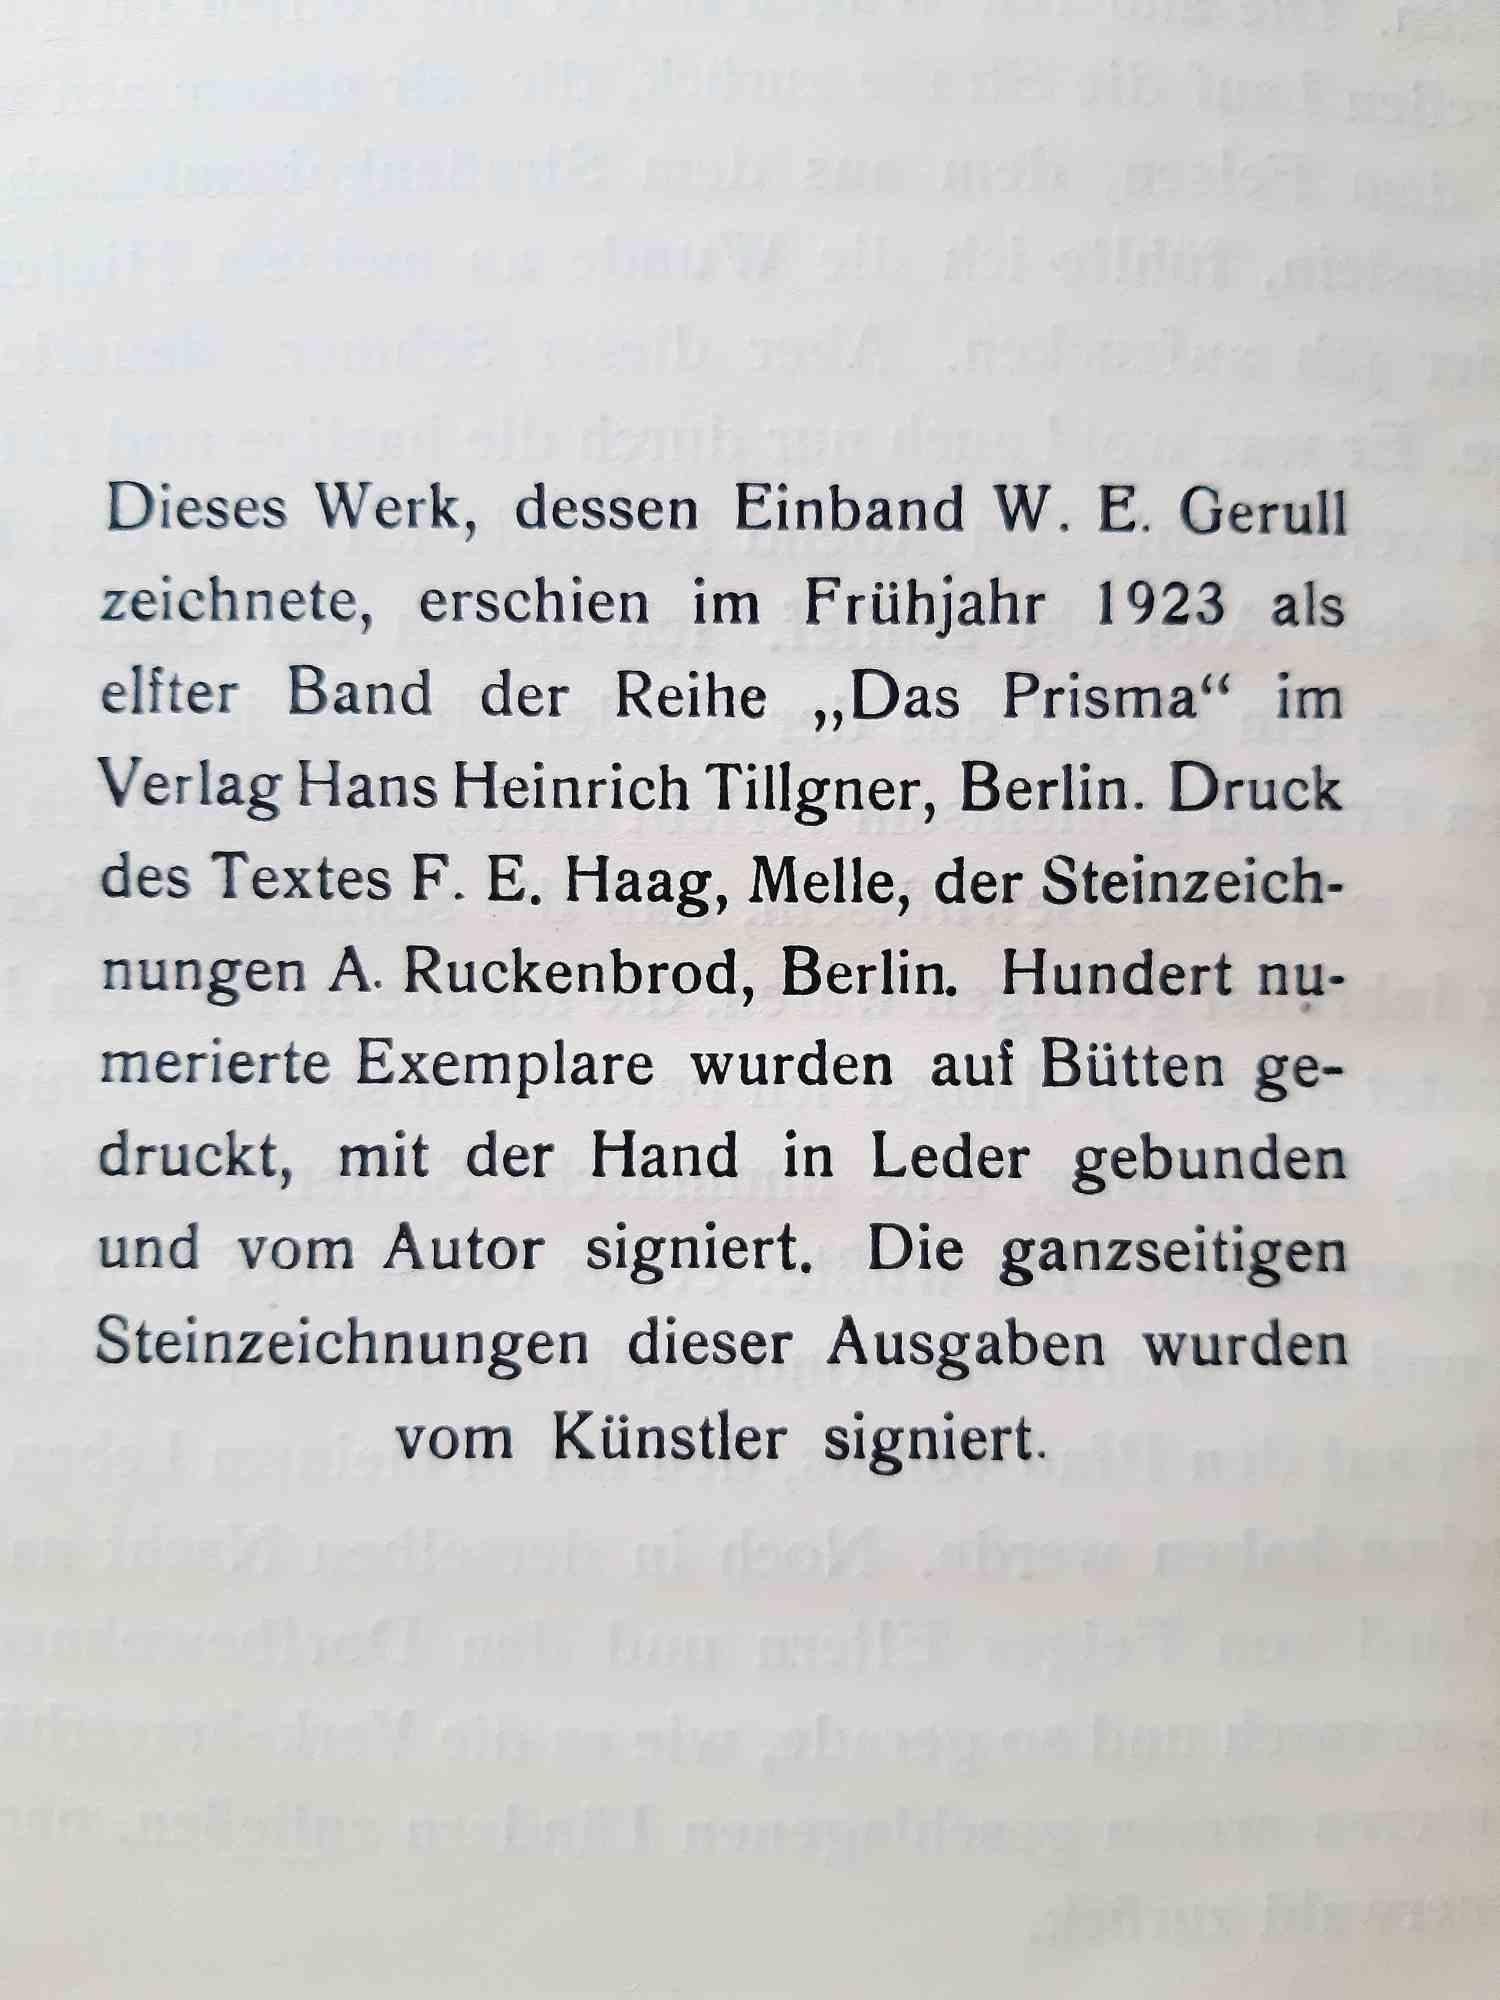 Ekstatische Geschichten is an original modern rare book written by Arthur Holitscher (22 August 1869 – 14 October 1941) and illustrated by Magnus Zeller (Biesenrode, August 9, 1888 - Berlin, February 25, 1972) in 1923.

Original First